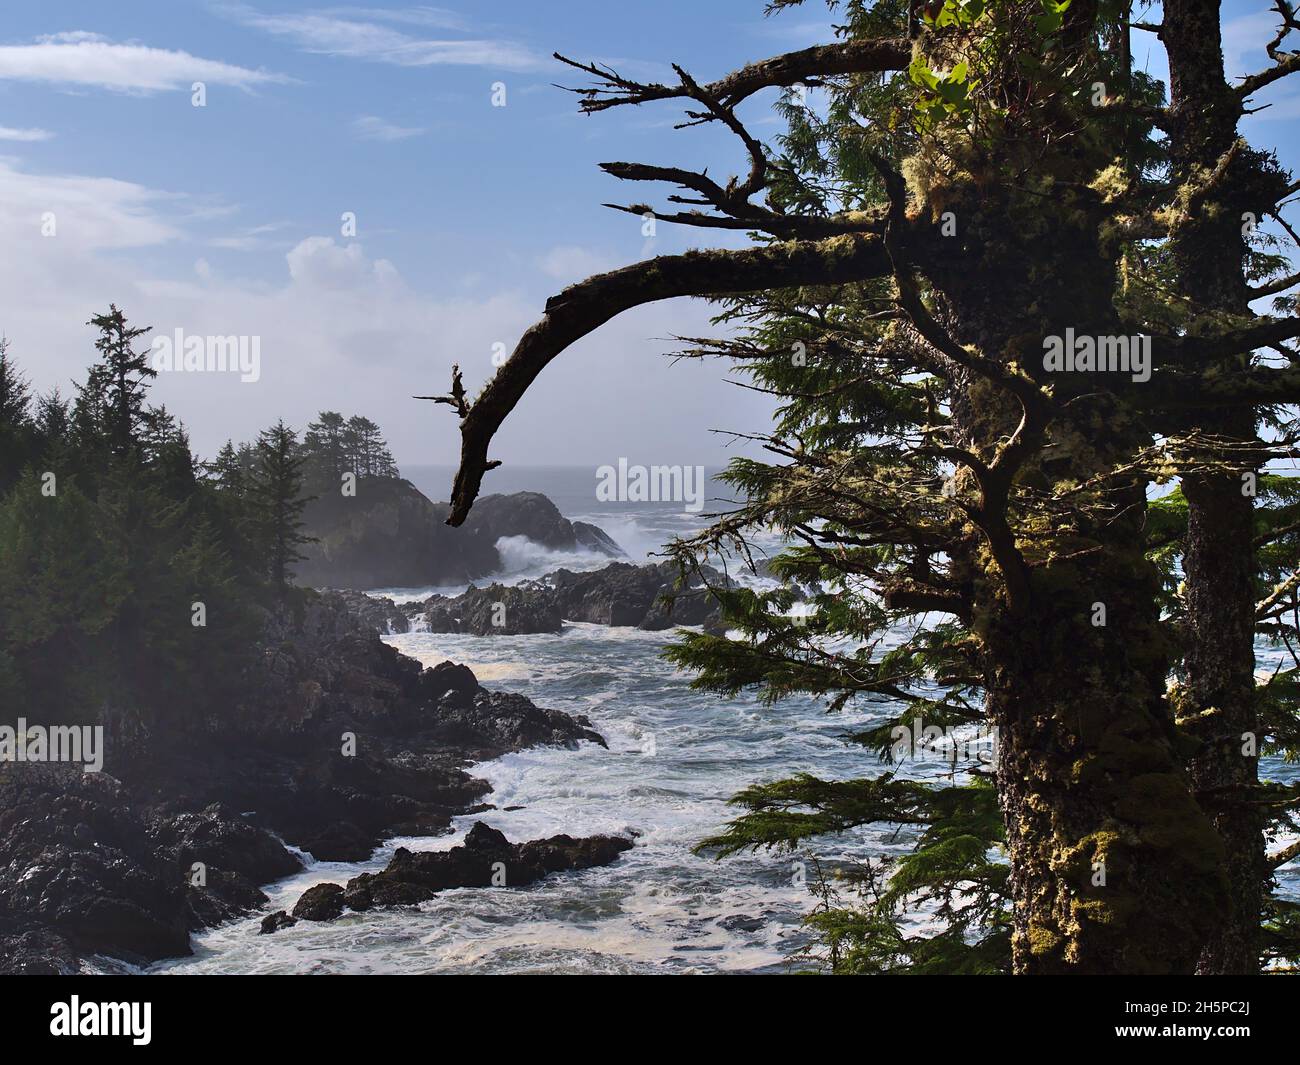 Costa salvaje del Océano Pacífico con fuerte oleaje y olas rompiendo en rocas cerca de Ucluelete, Isla de Vancouver, BC, Canadá con árboles cubiertos de musgo. Foto de stock